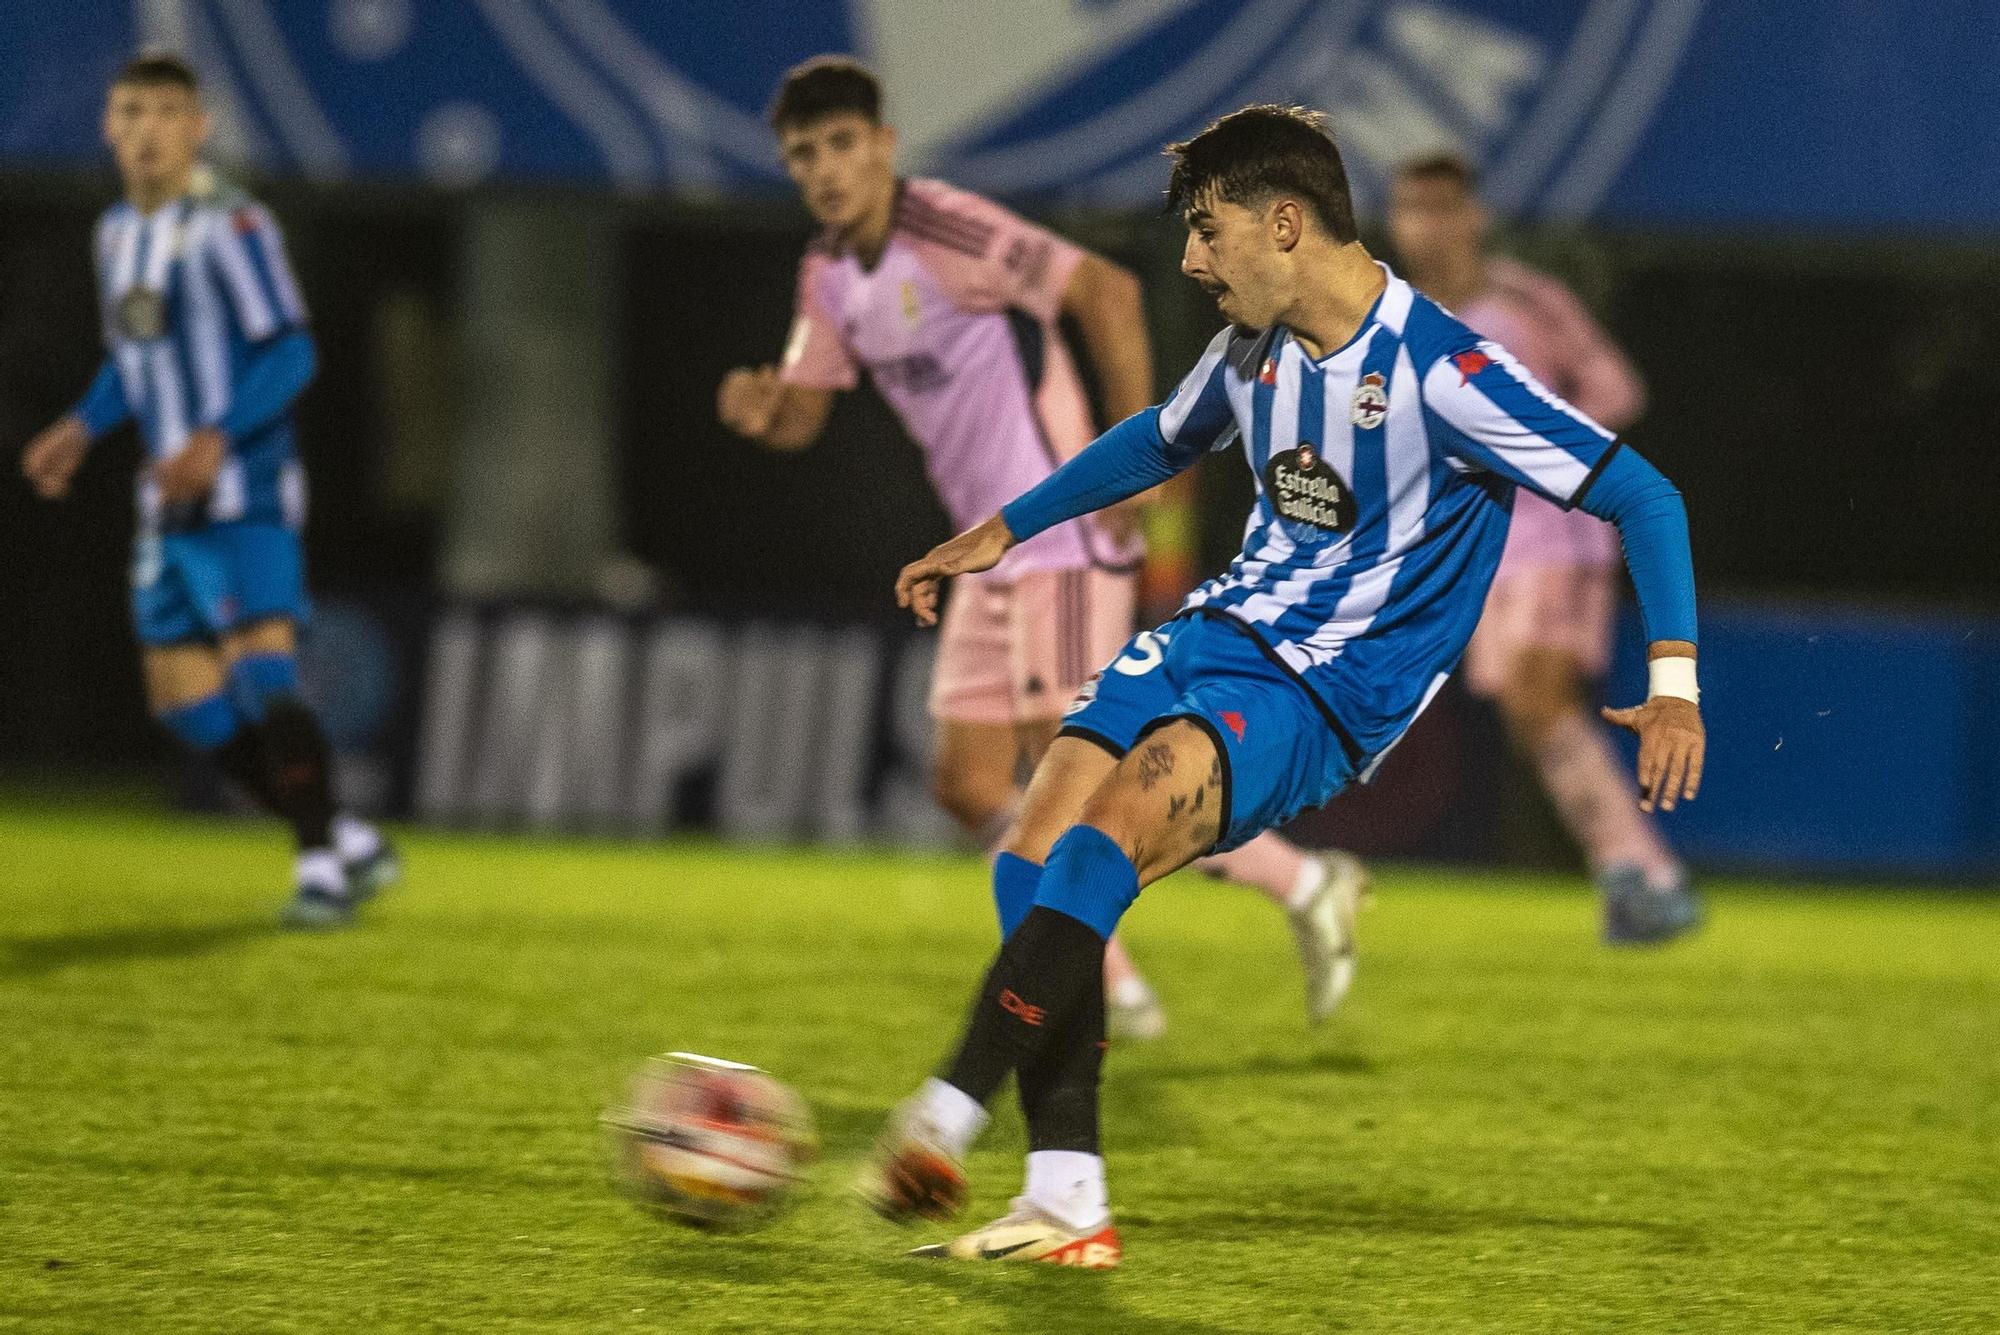 El Fabril empata (1-1) con el Real Oviedo B